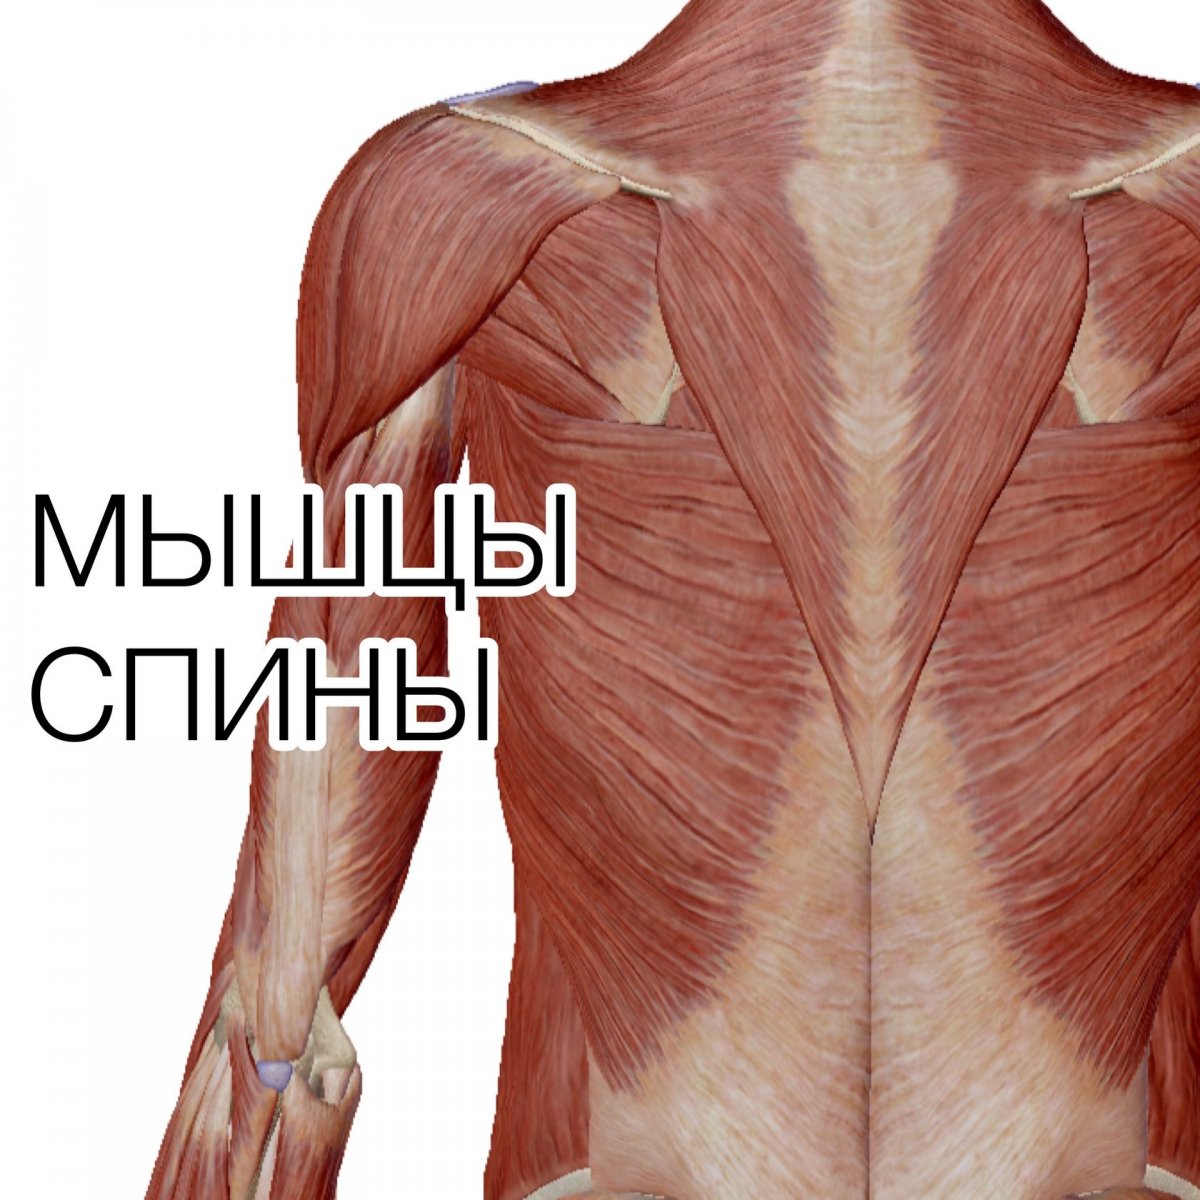 Мышцы внутри человека